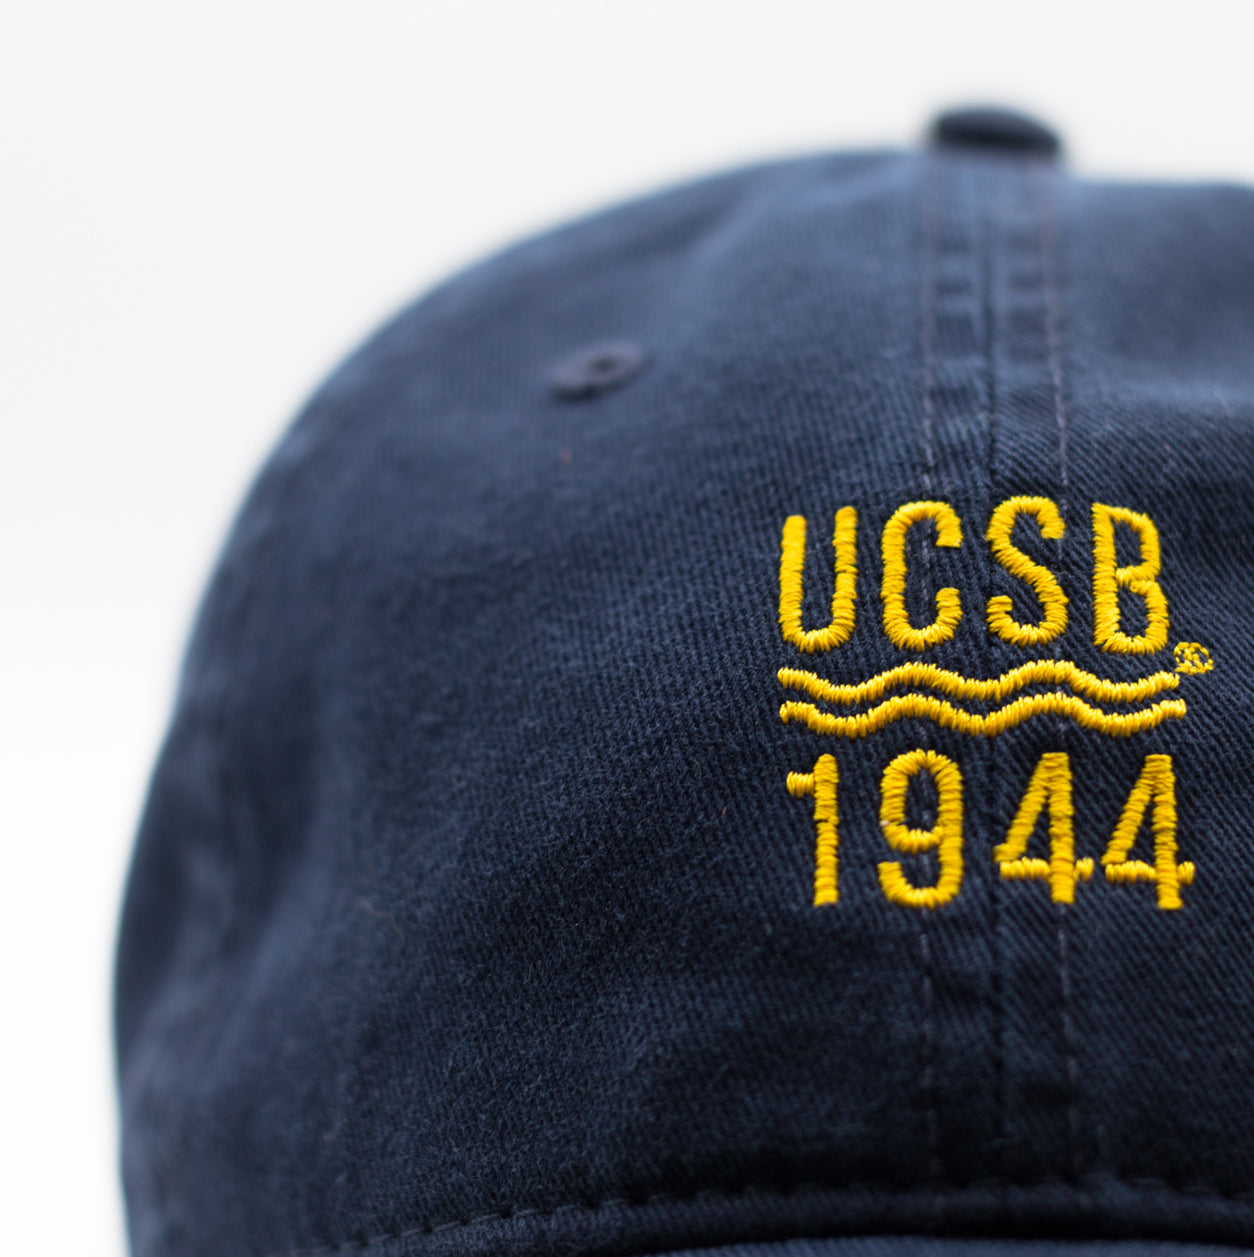 UCSB 1944 Navy Dad Cap